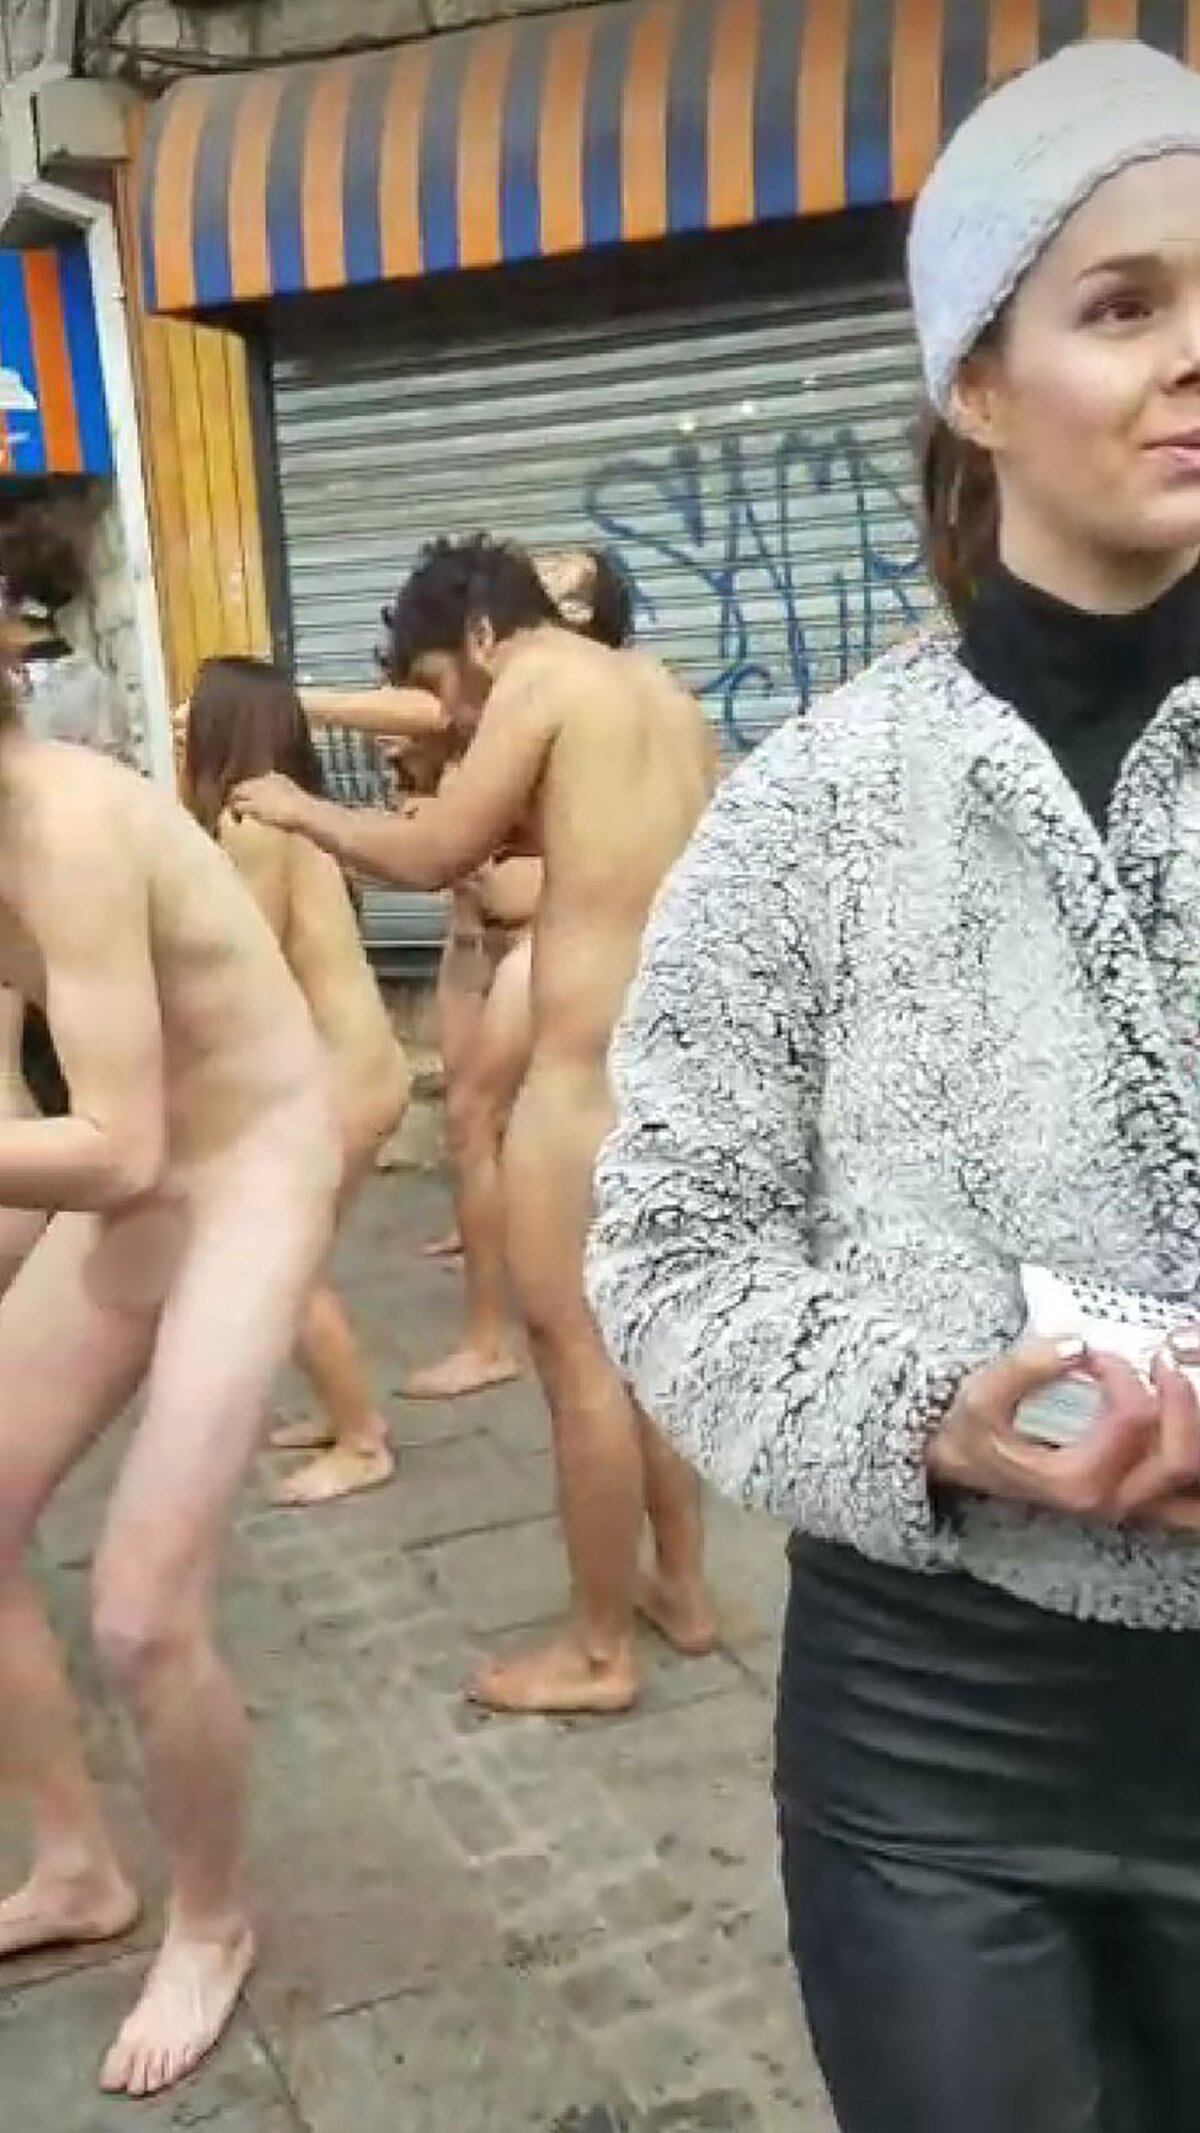 Un Grupo De Hombres Y Mujeres Se Desnudó En El Centro De Bariloche Para